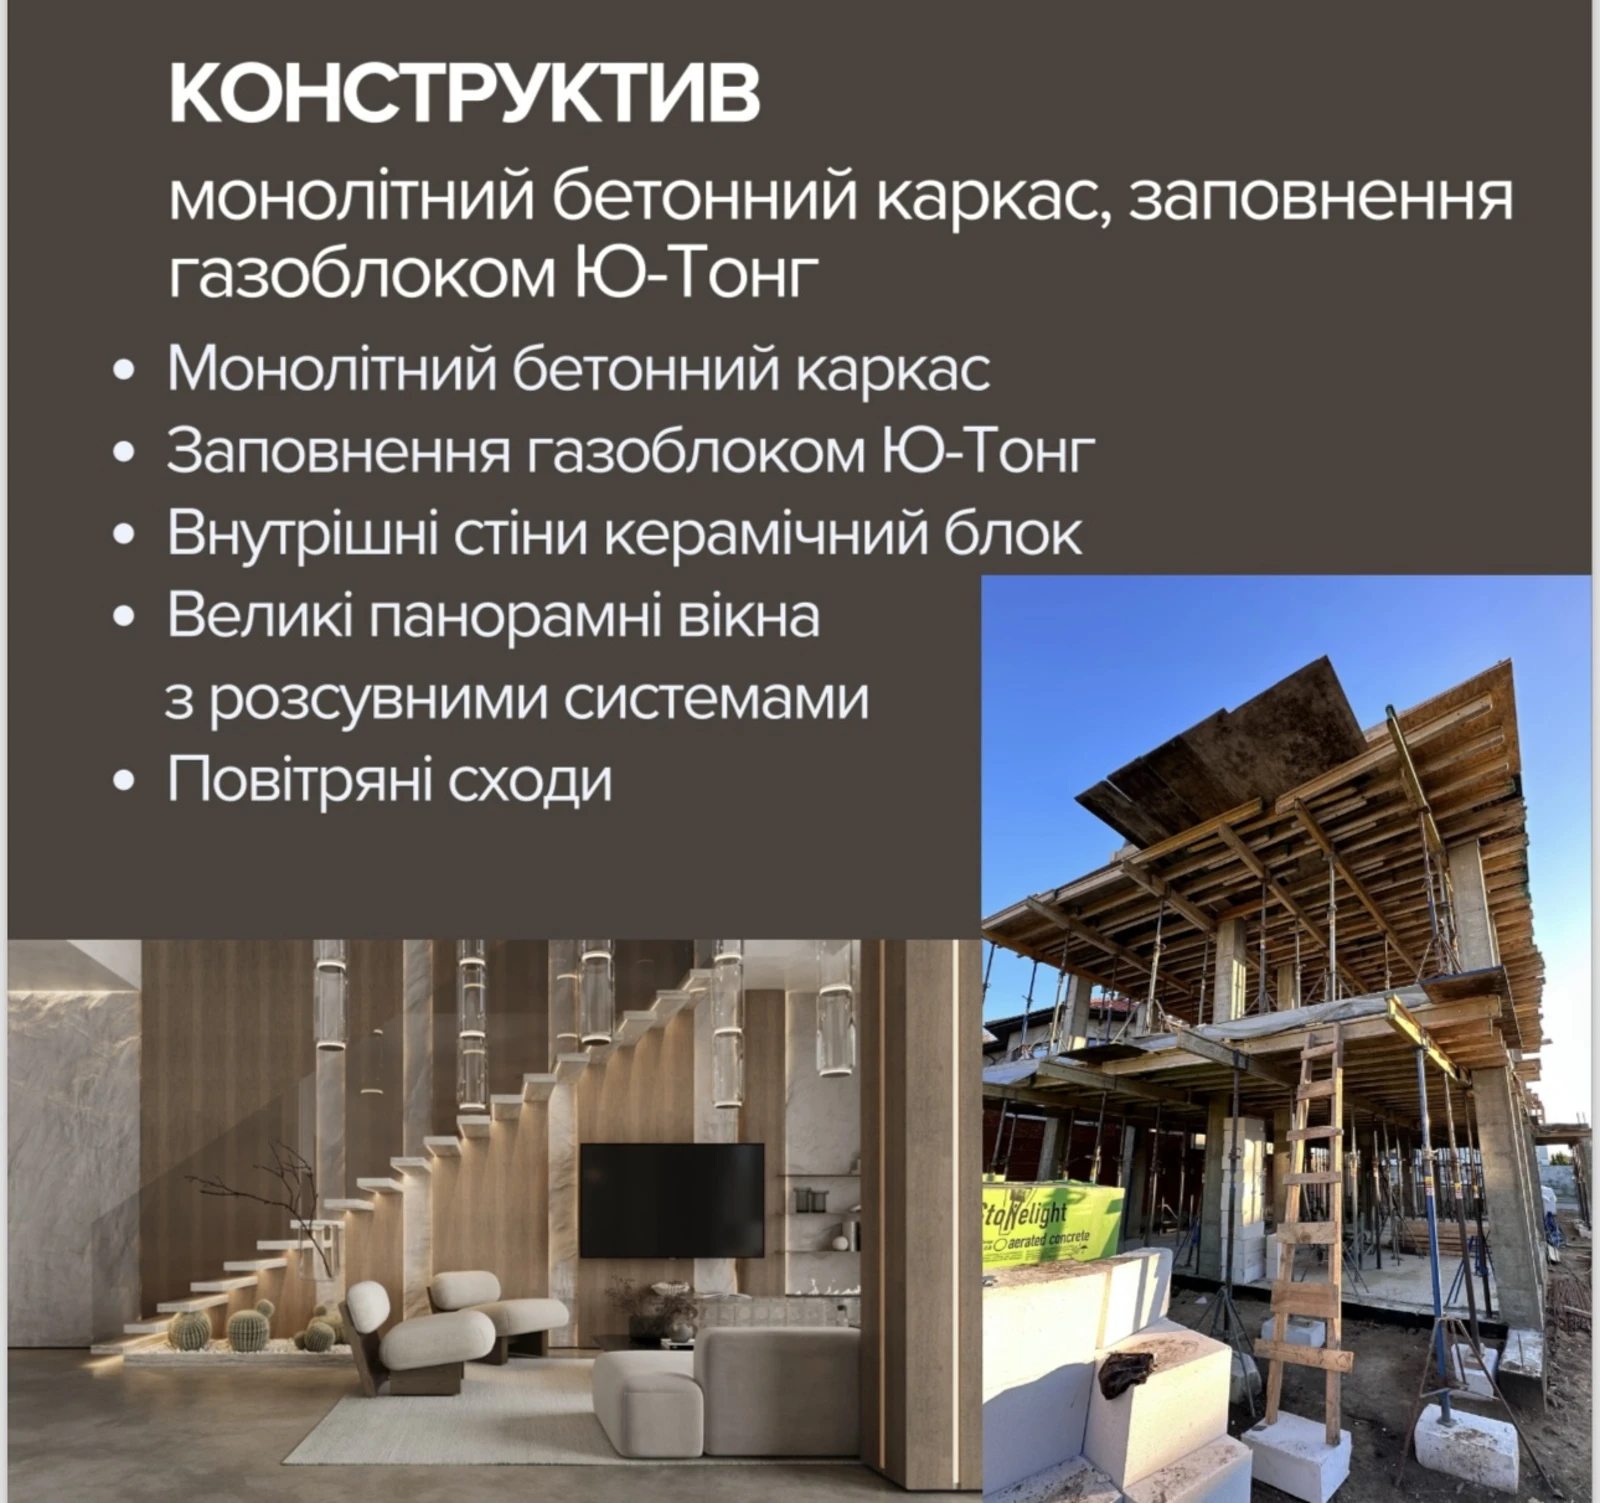 House for sale. 230 m², 2 floors. Morskyy prospekt, Odesa. 